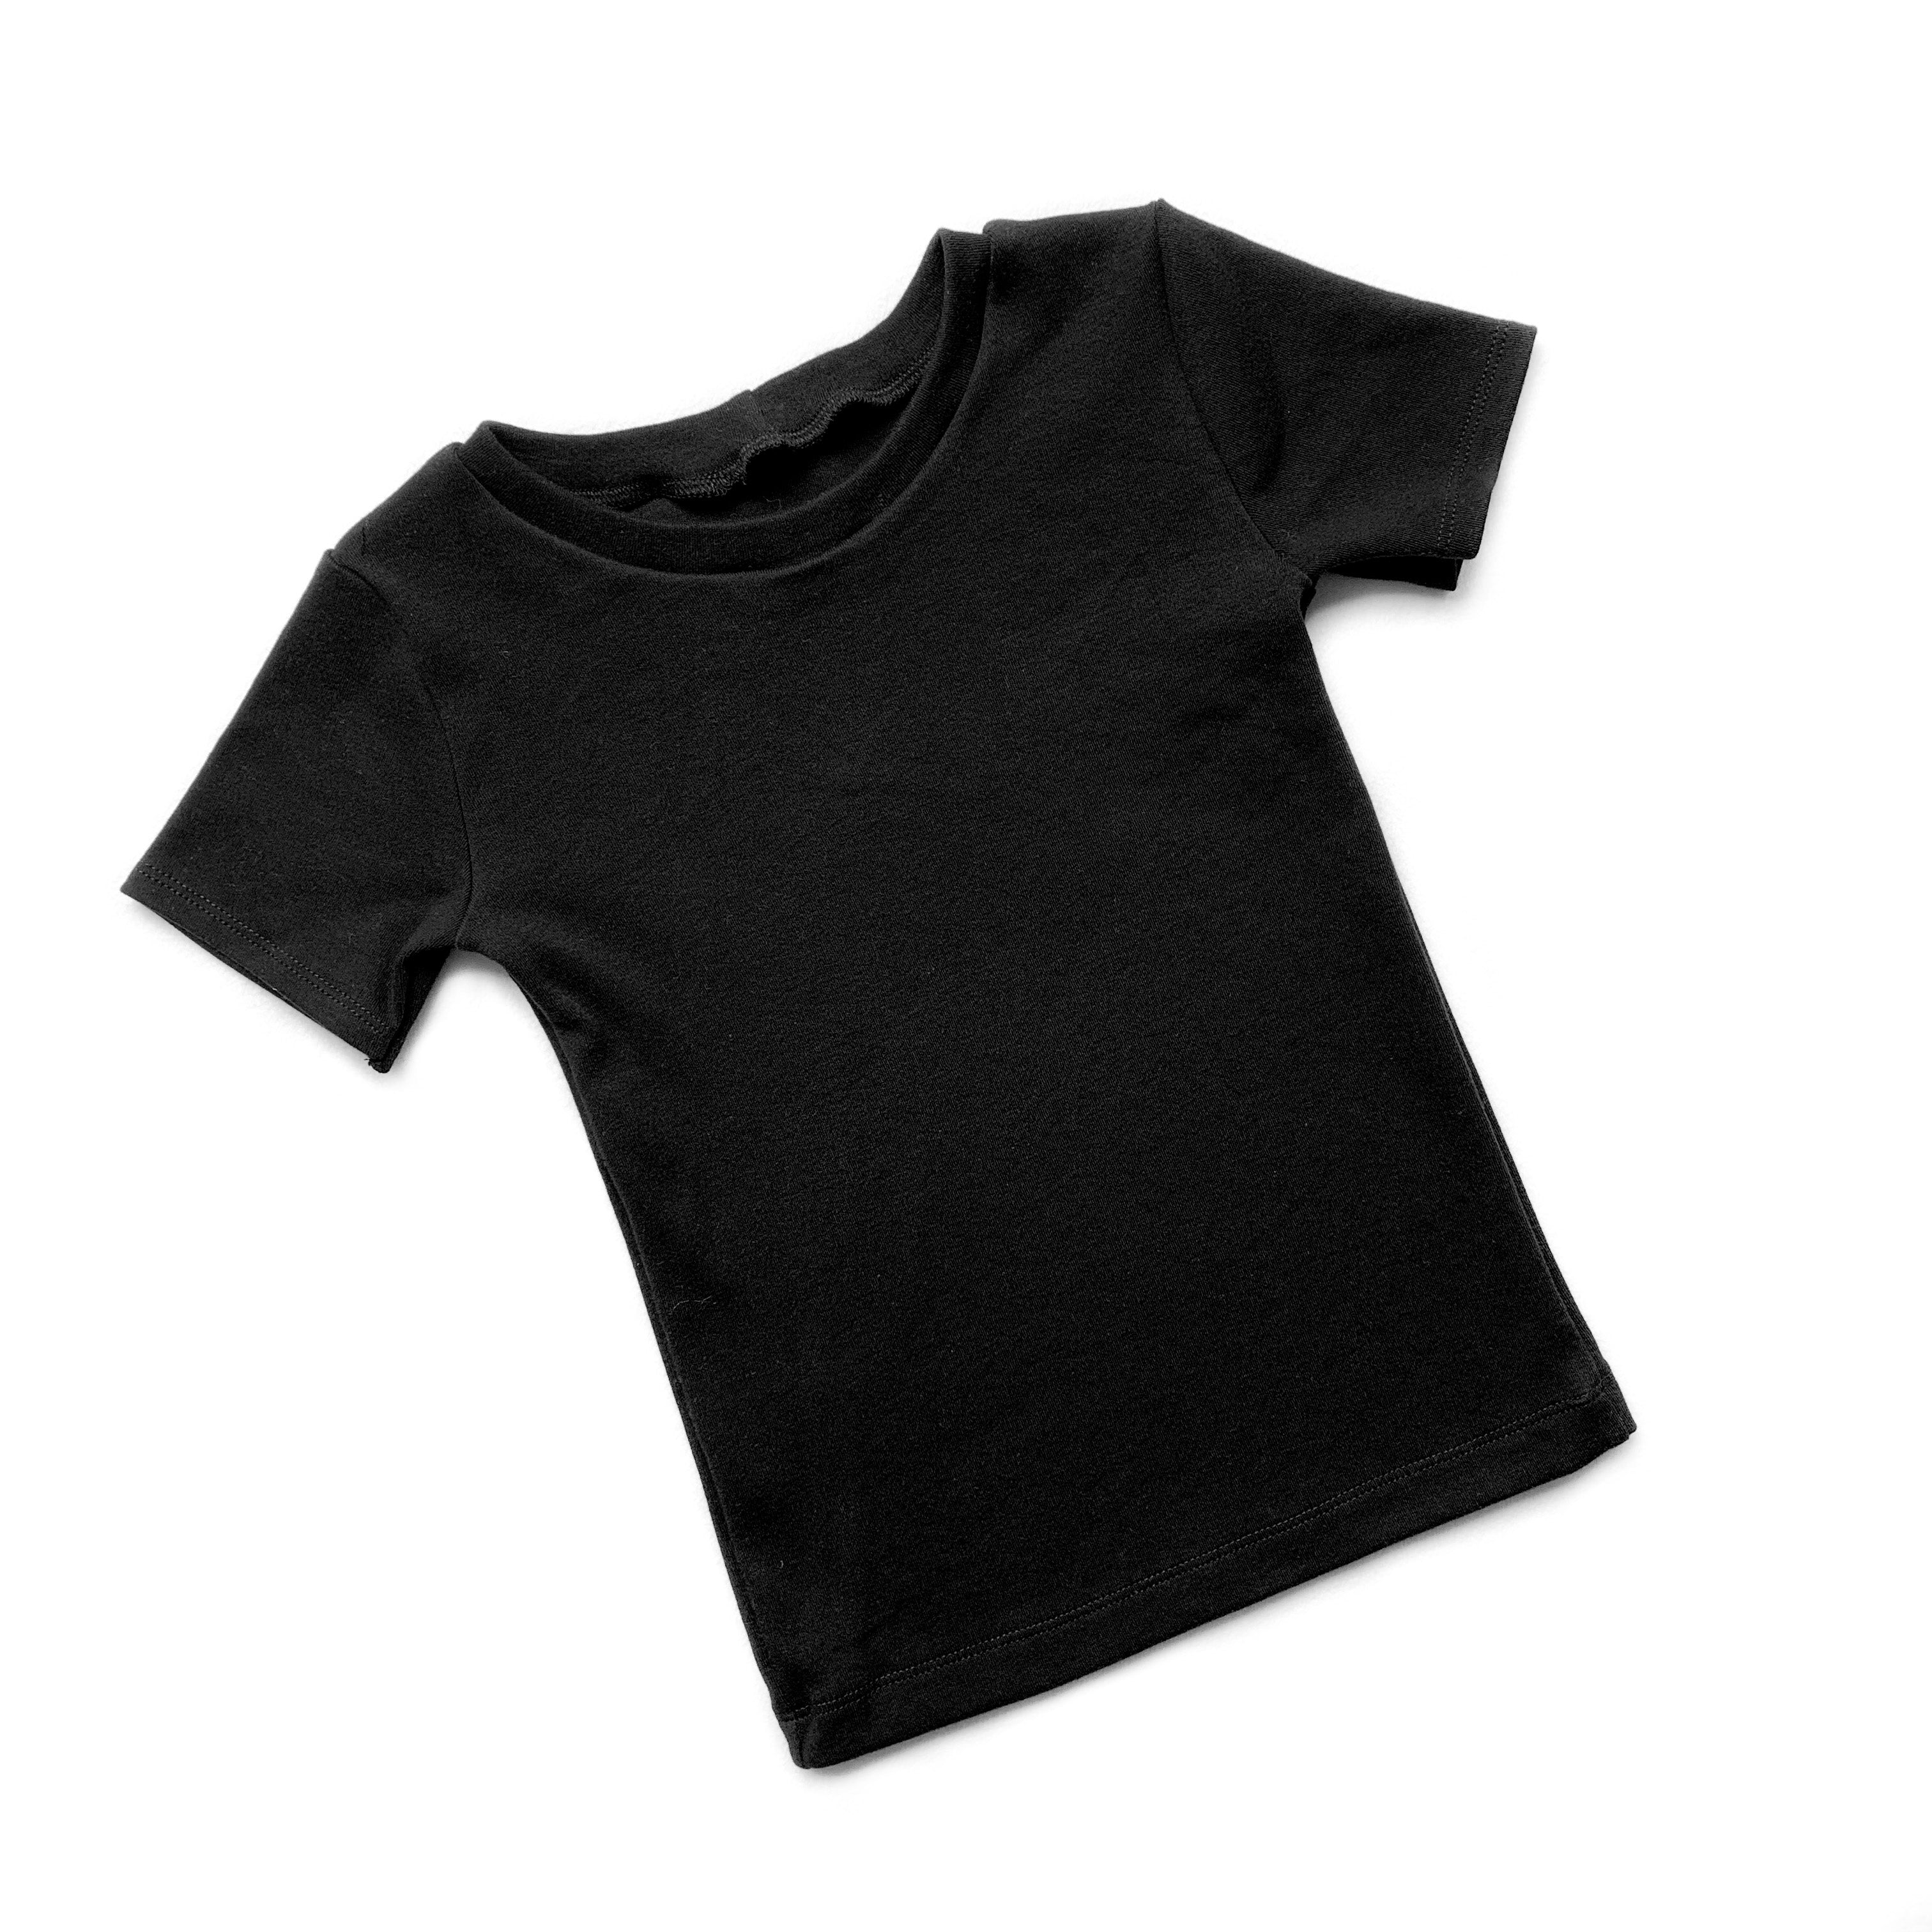 Toddler Basic Black Shirt